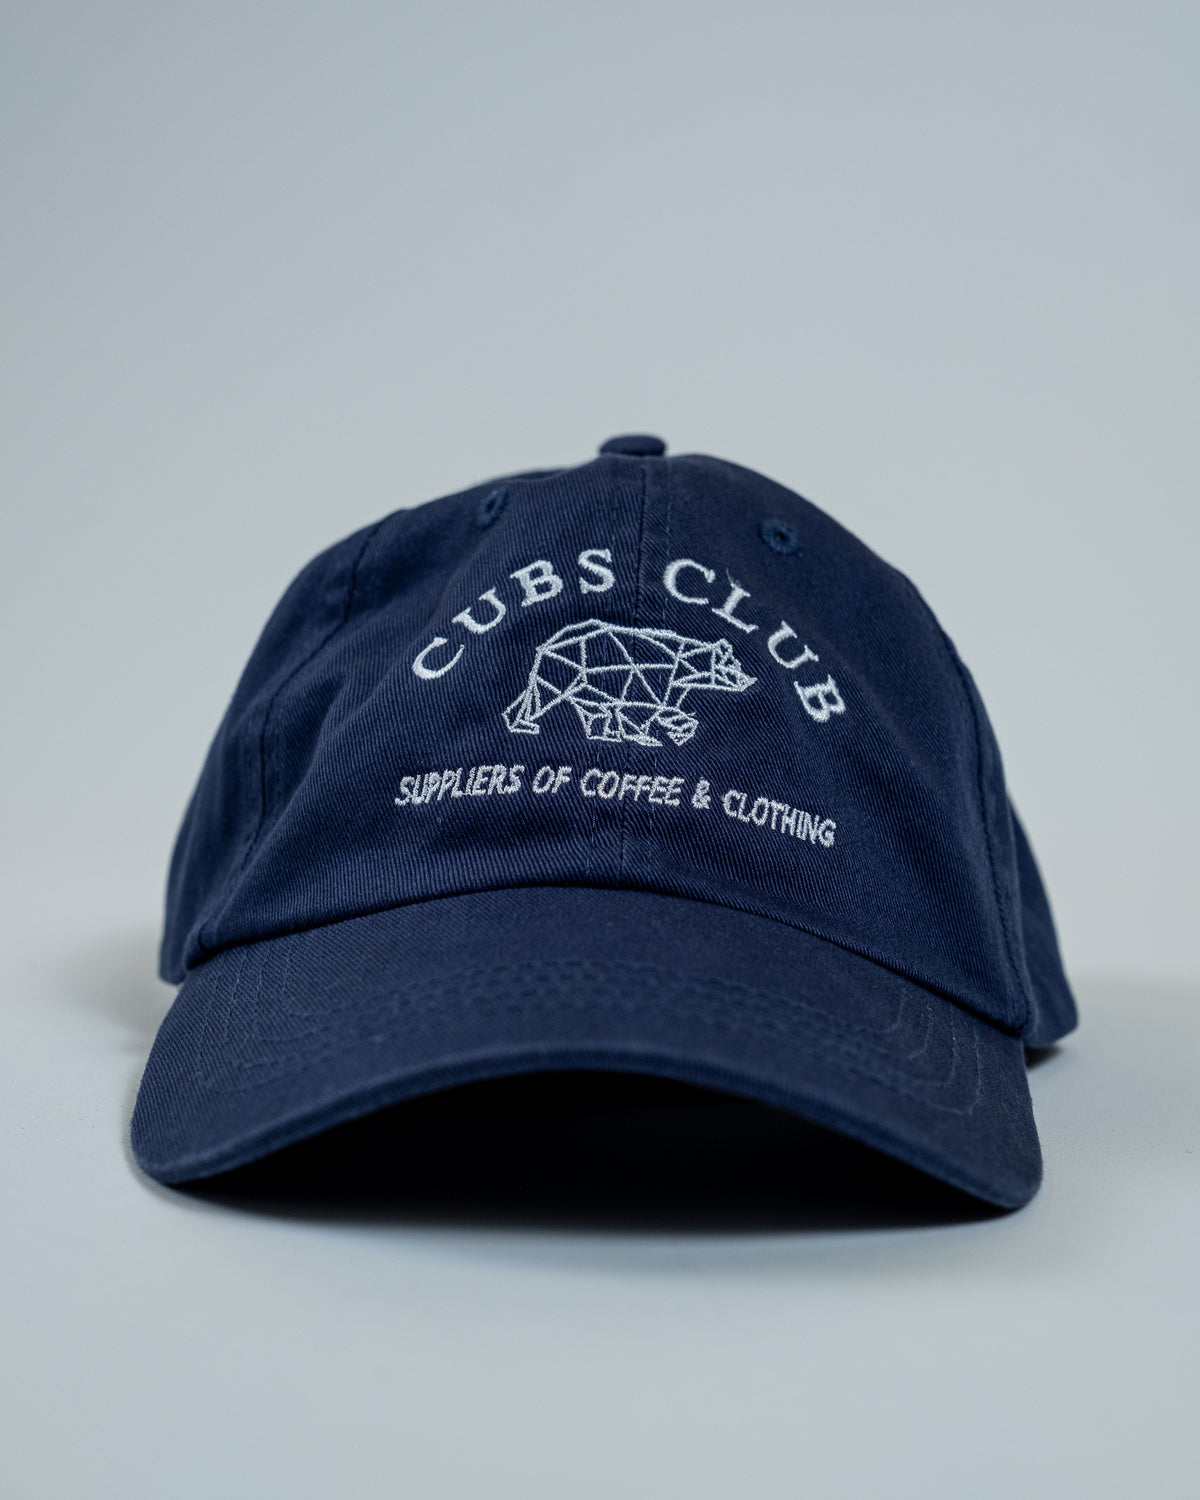 Cubs Club Cap - Navy, No.1 Cubs